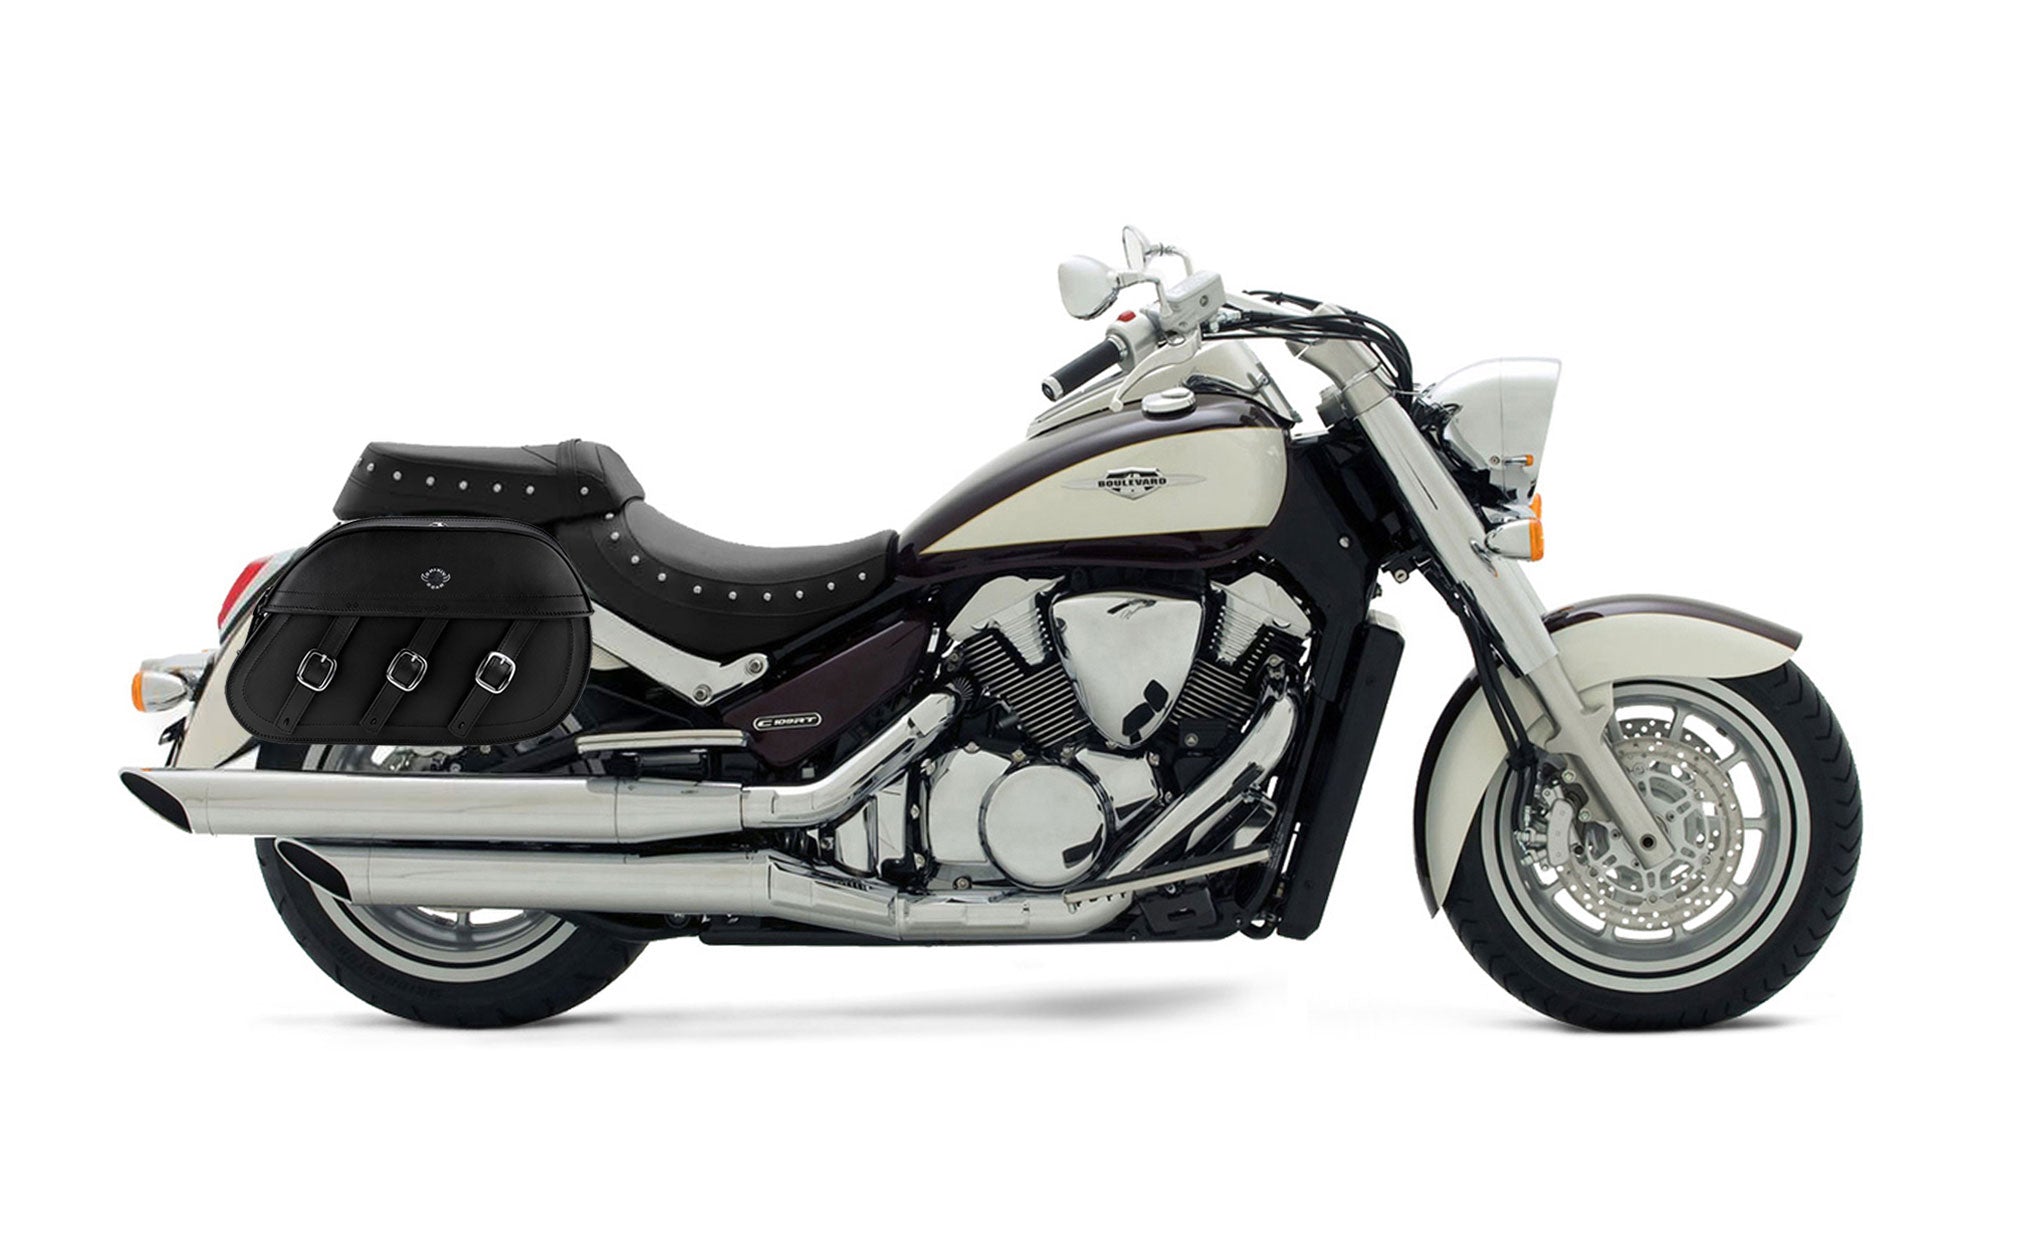 Viking Trianon Extra Large Suzuki Boulevard C109 Leather Motorcycle Saddlebags on Bike Photo @expand